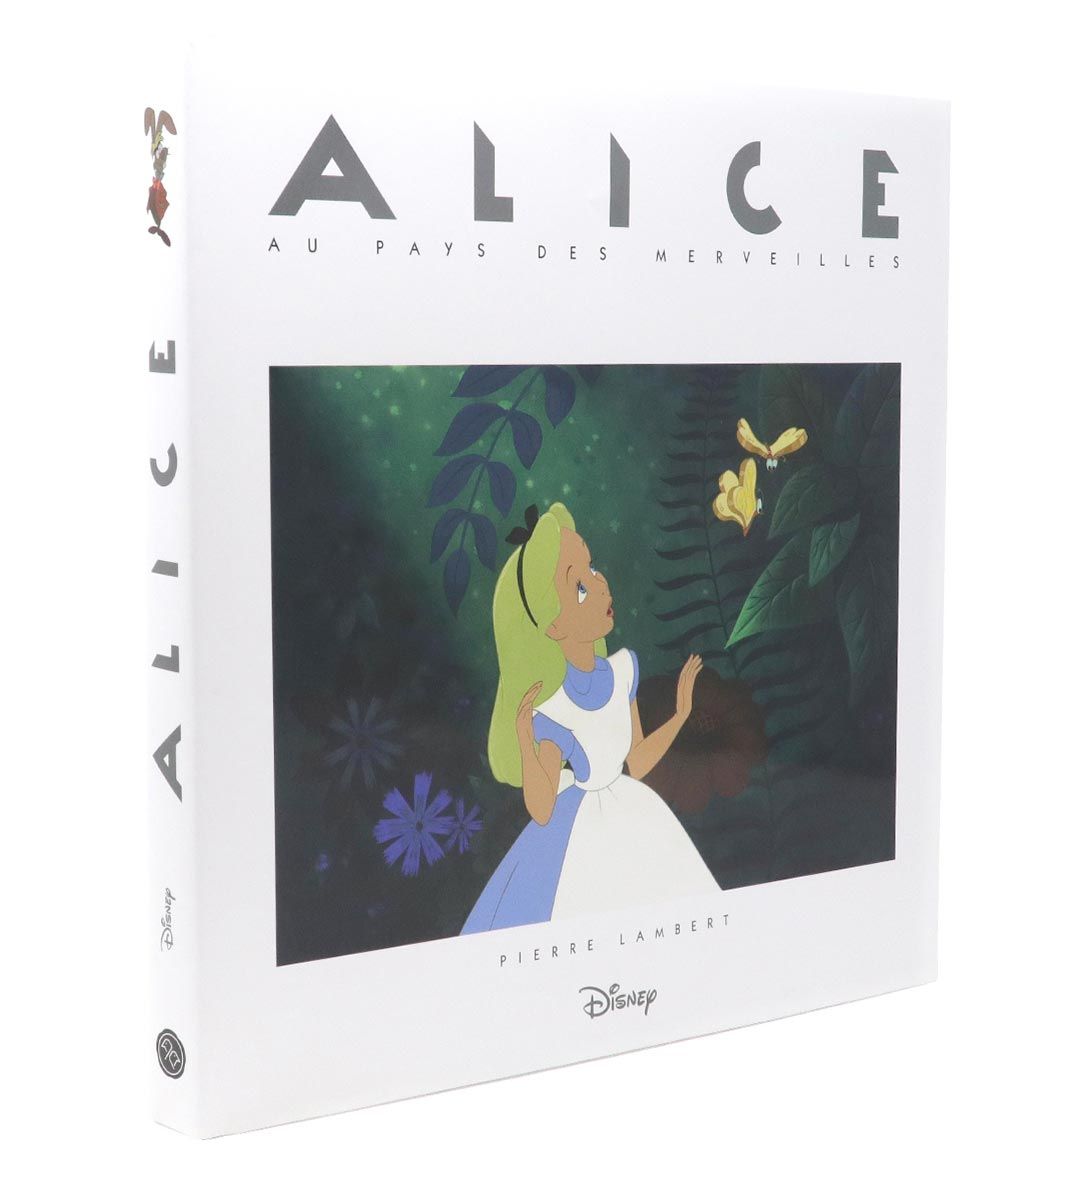 Alice au pays des merveilles by Pierre Lambert